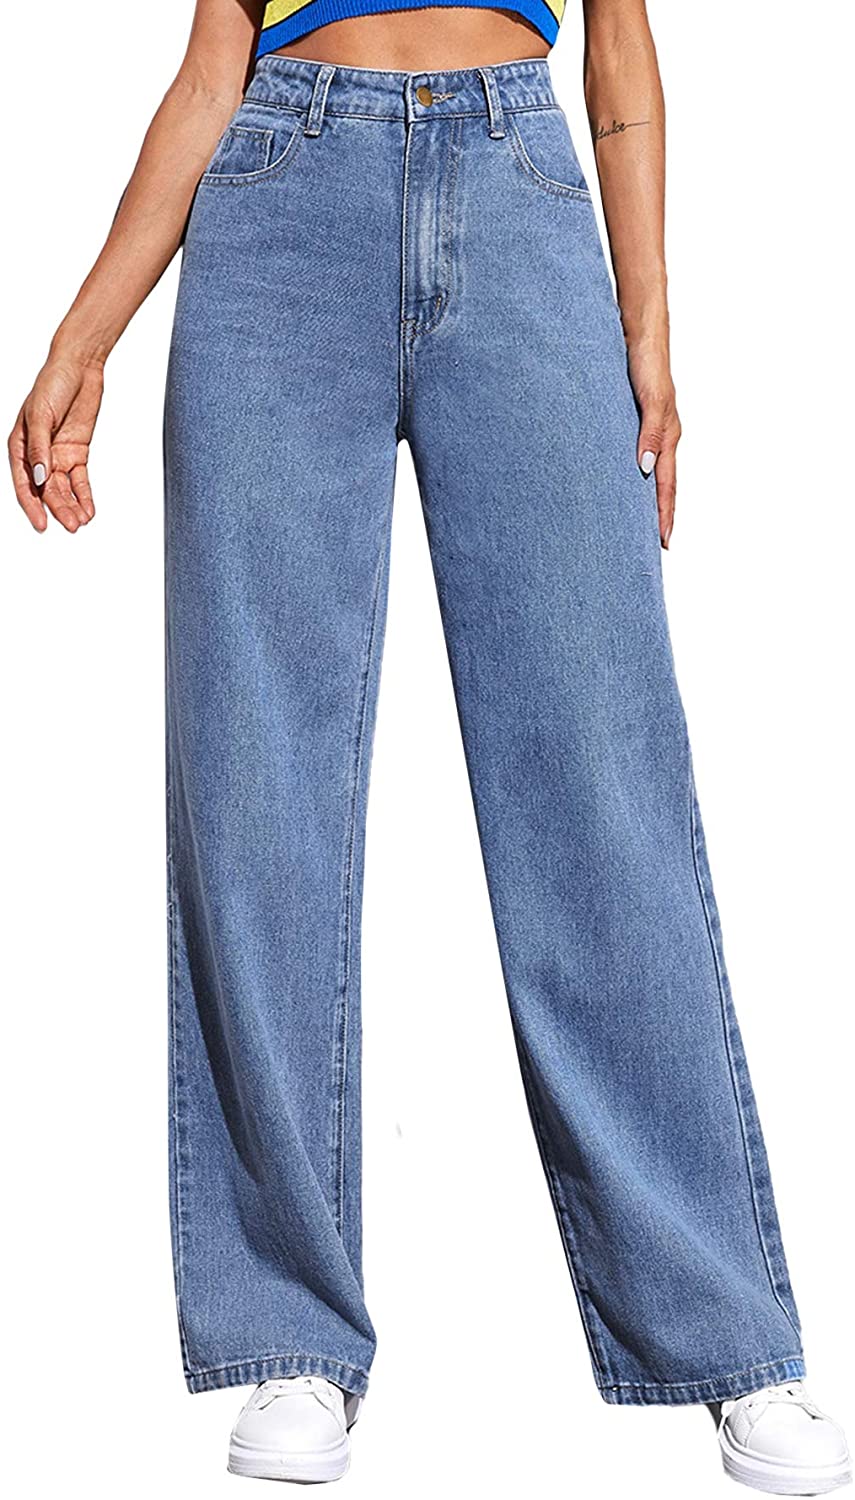 Wide leg jeans for women